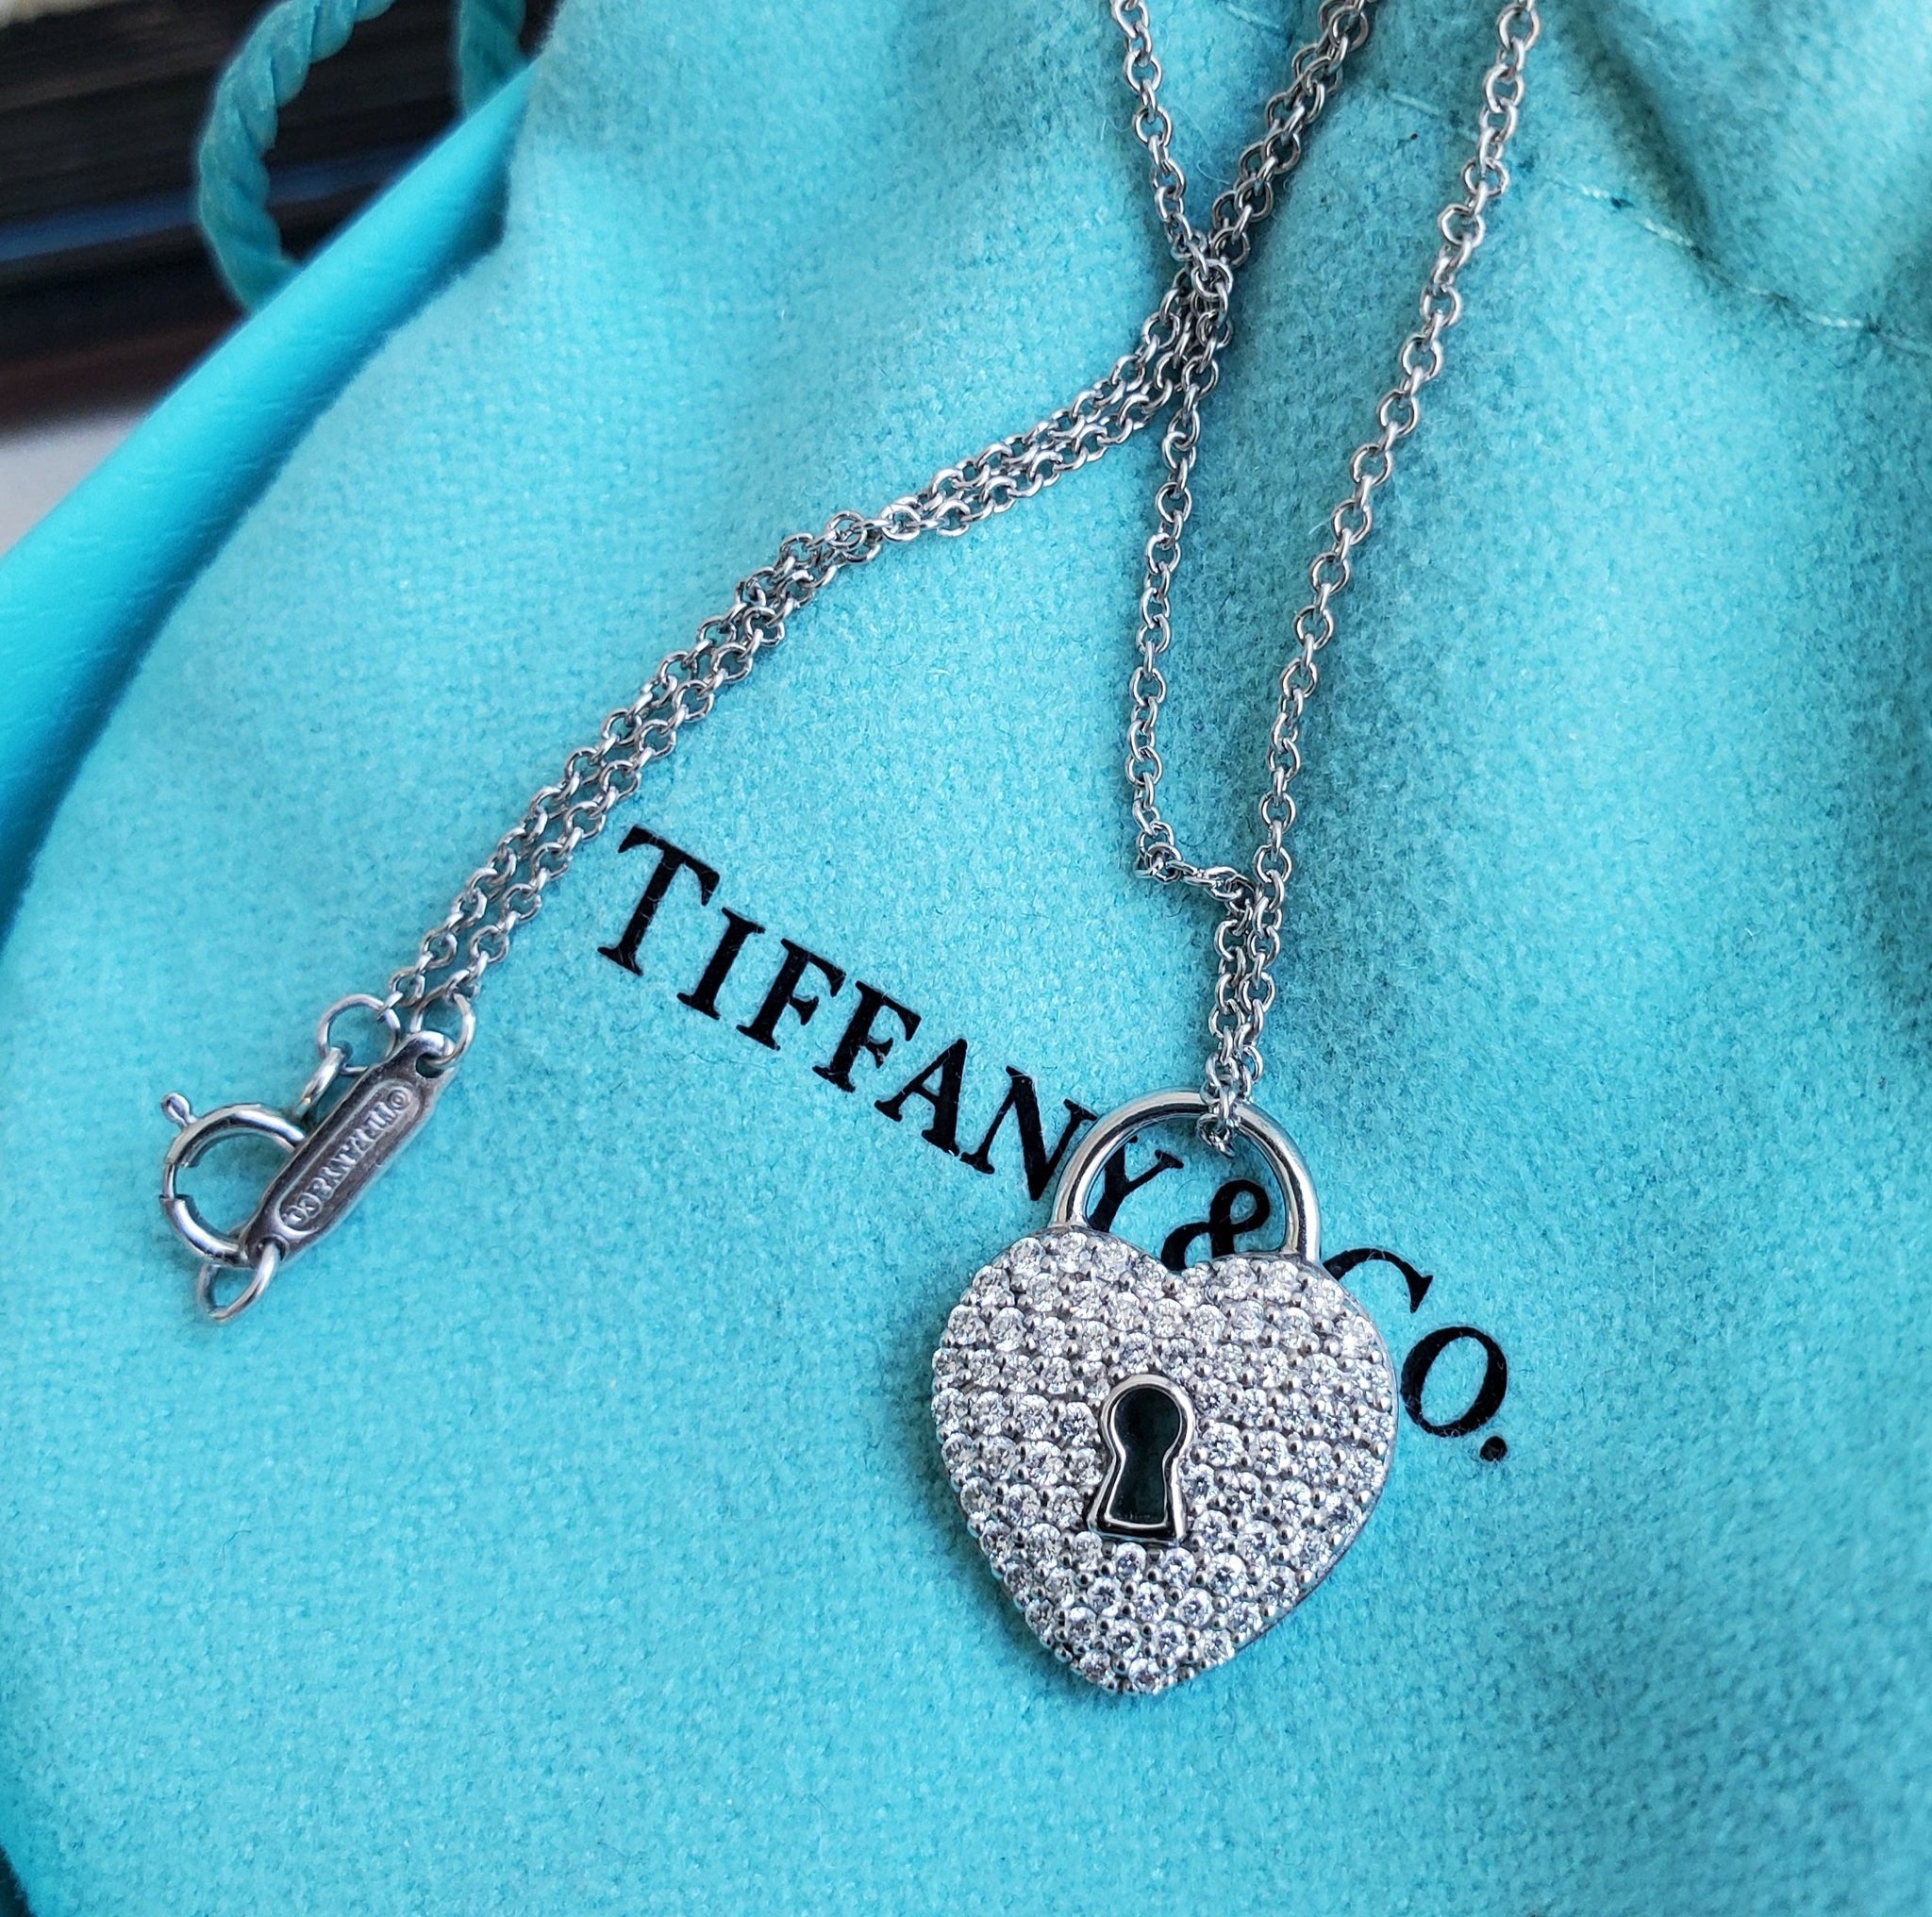 TIFFANY & CO. DIAMOND HEART LOCK PENDANT NECKLACE